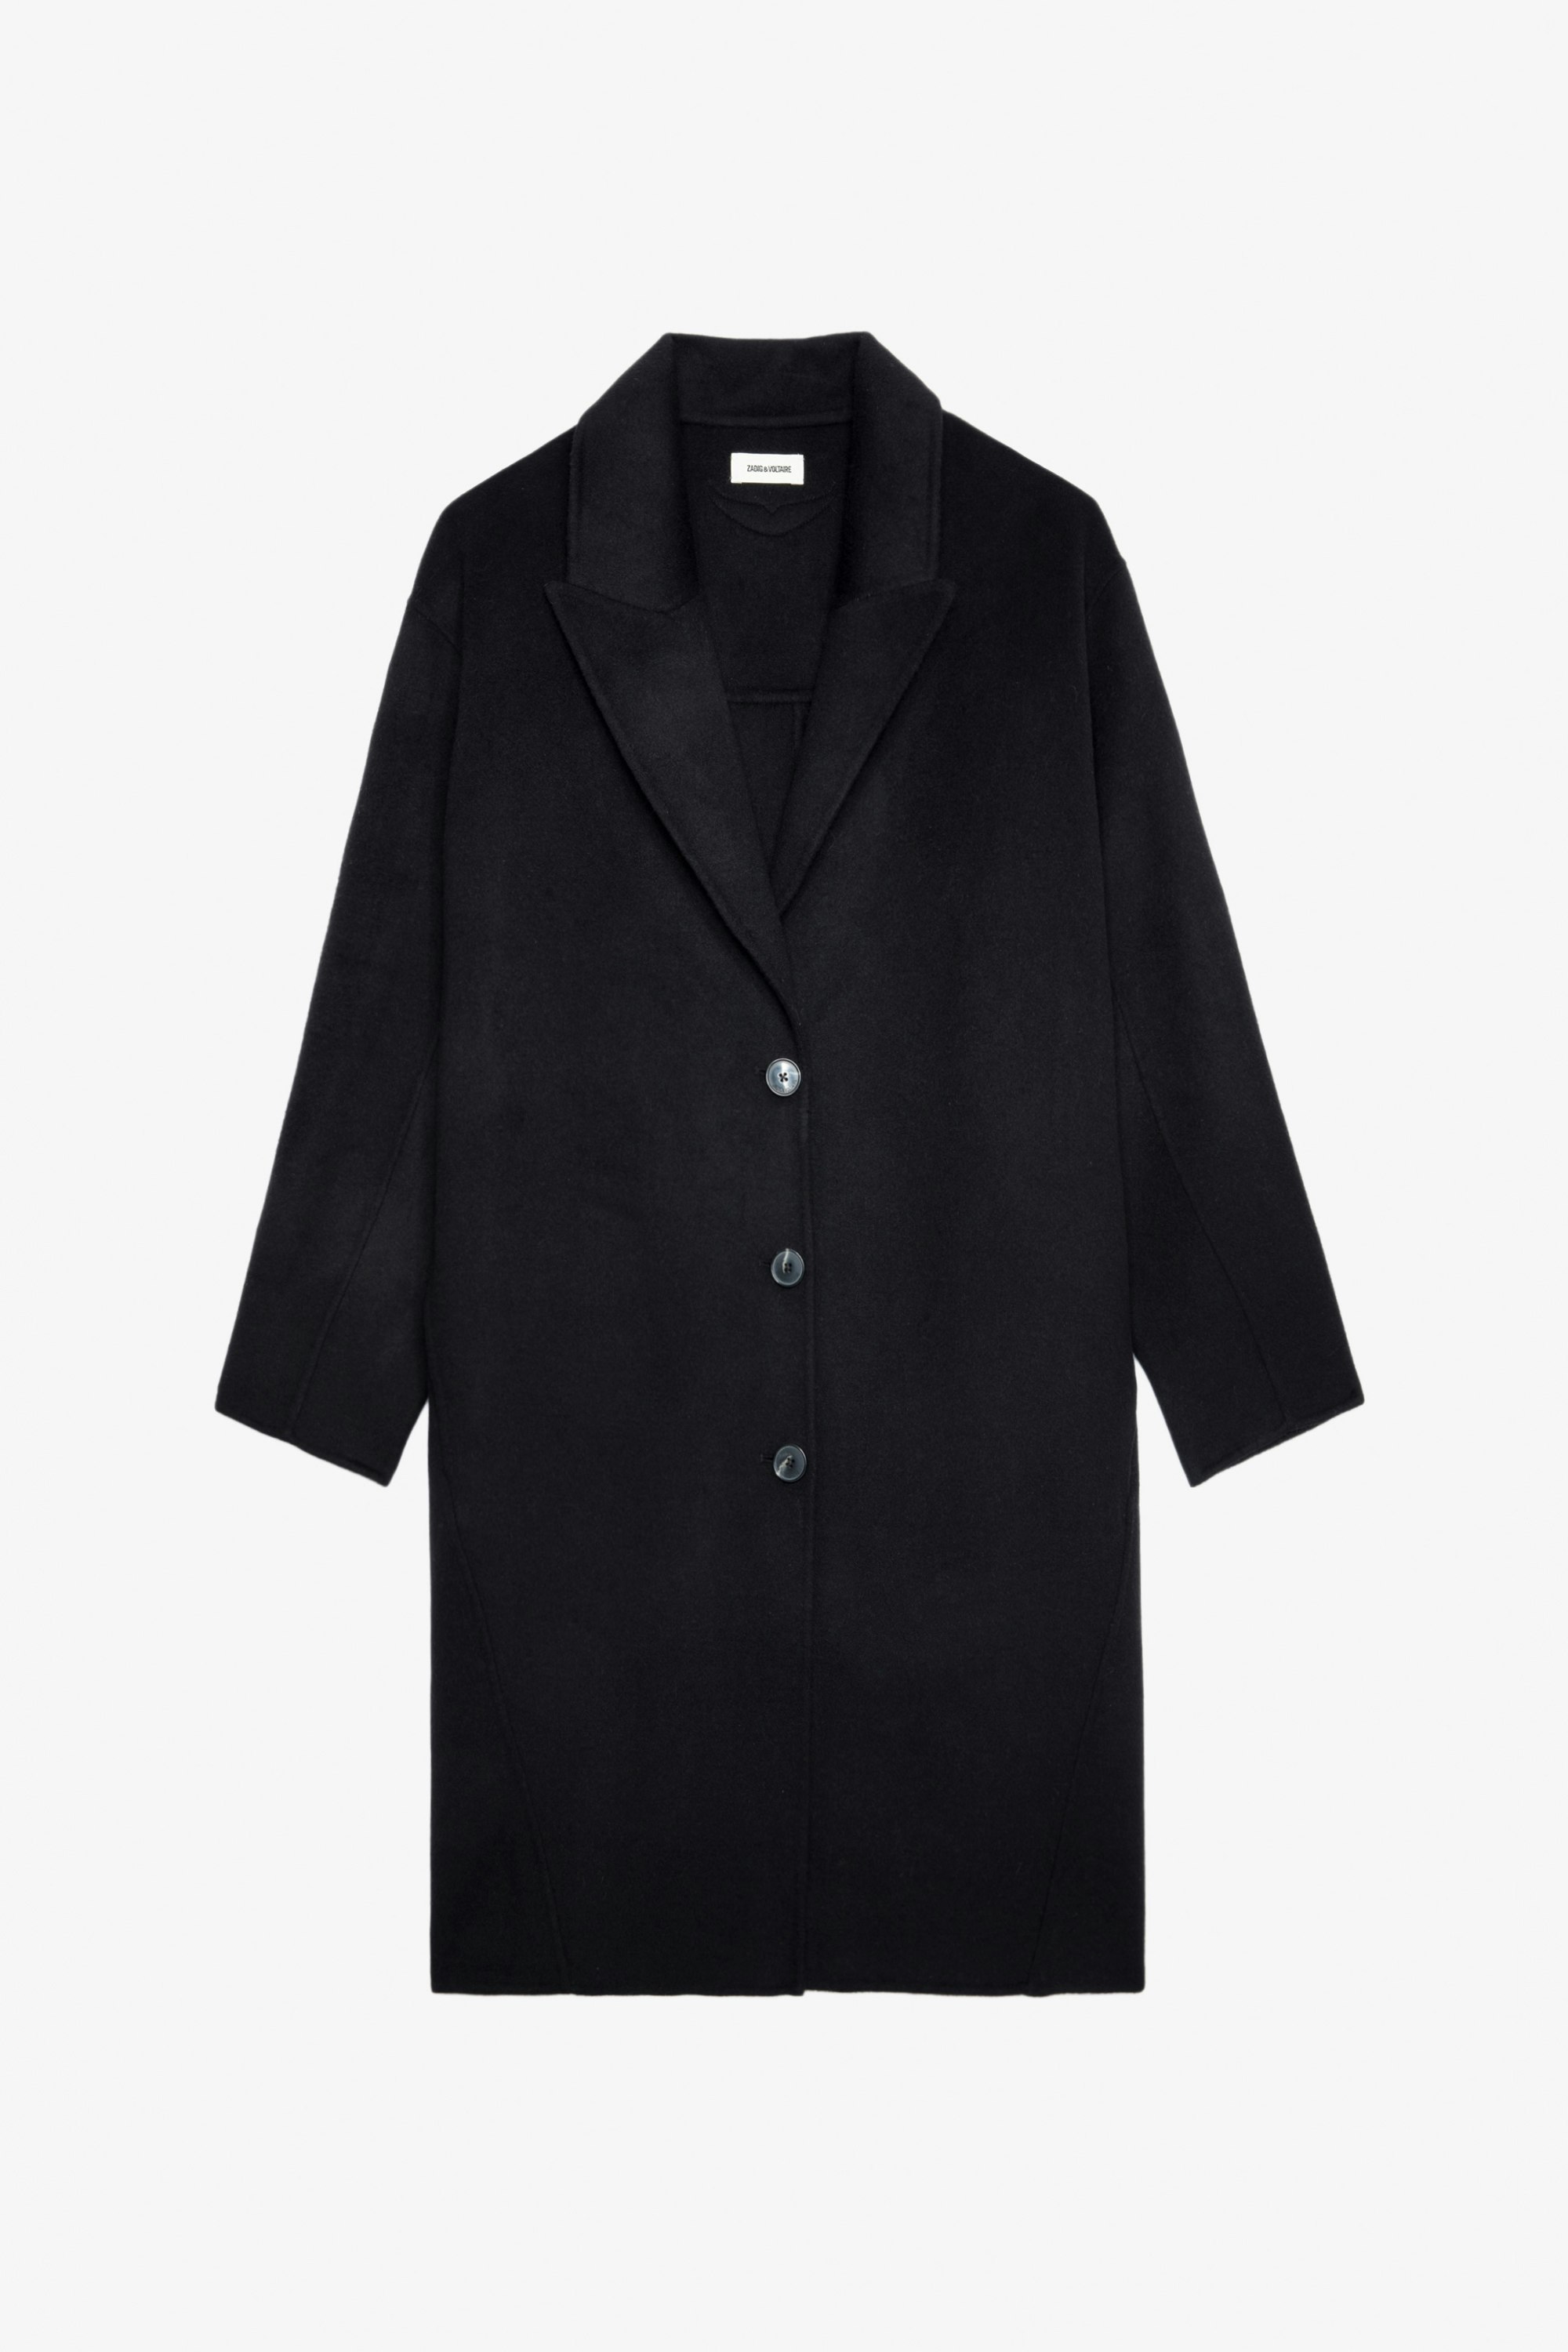 Mantel Mady - Langer Damen-Mantel aus schwarz melierter Wolle mit Flügelmotiv auf der Rückseite